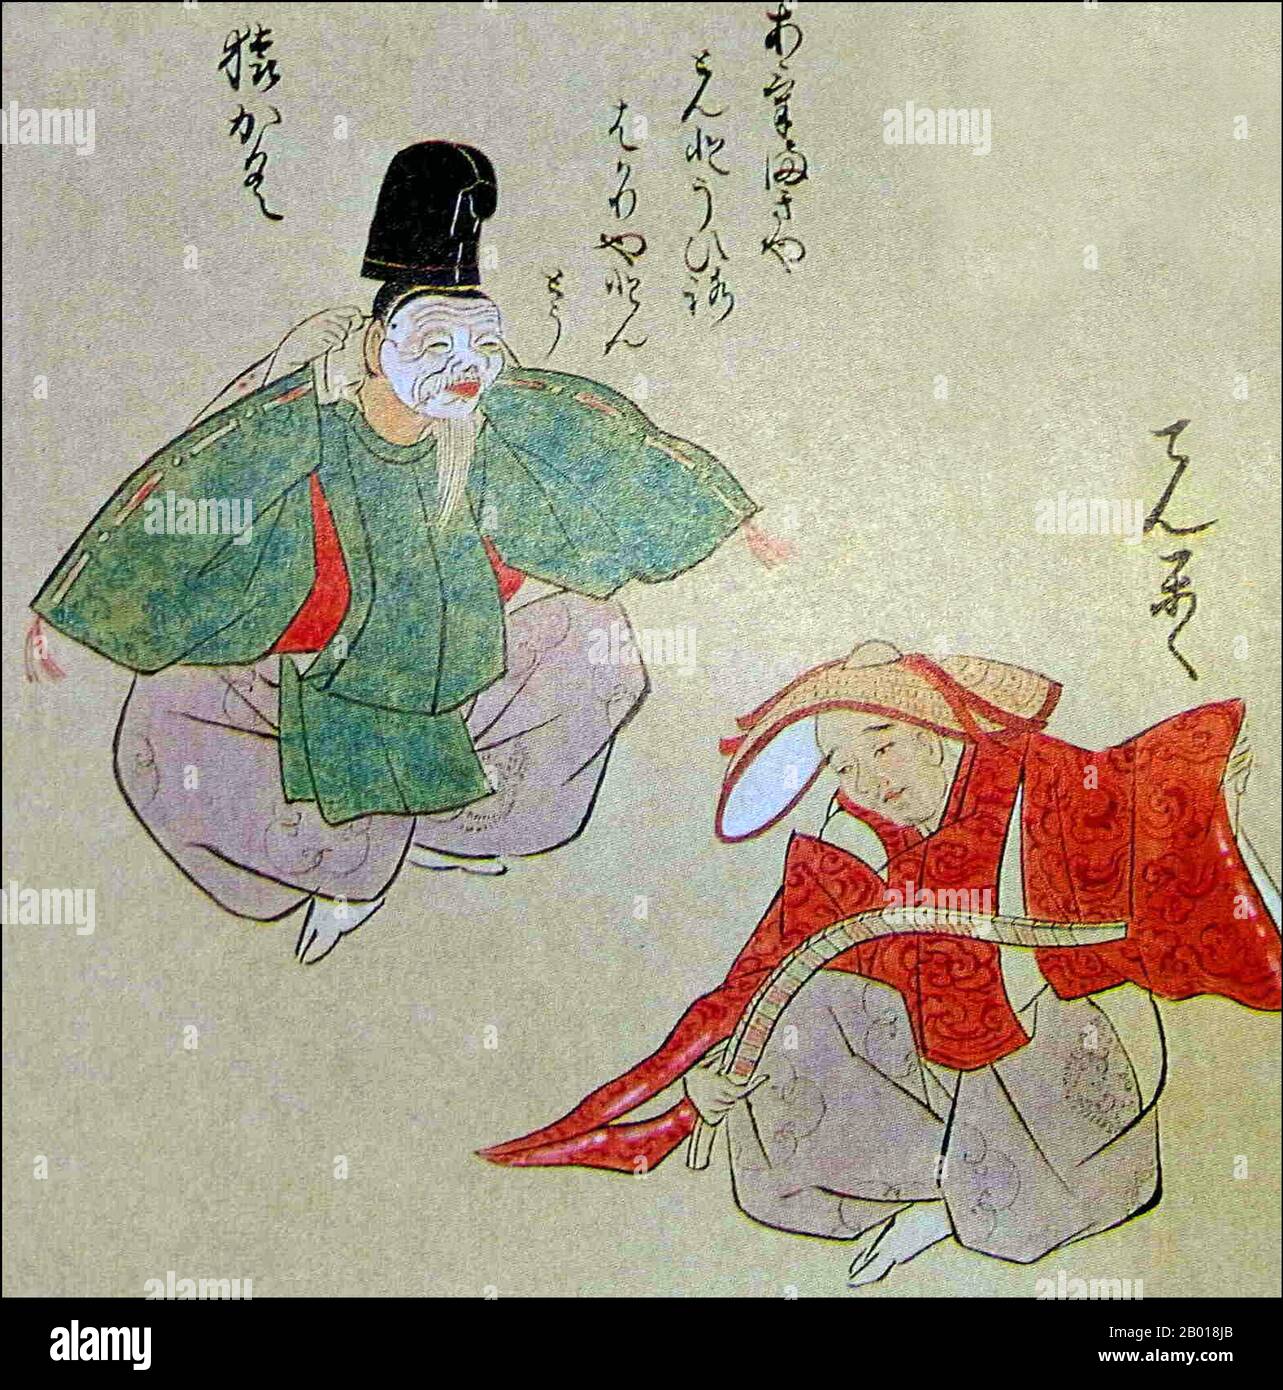 Japon : artistes-interprètes Sarugaku (à gauche) et Dengaku (à droite). Aquarelle, c. 18th siècle. Sarugaku, littéralement « musique clé », était une forme de théâtre populaire au Japon au cours des 11th à 14th siècles. Il est originaire de 'sangaku', une forme de divertissement qui rappelle le cirque moderne, composé principalement d'acrobaties, de jonglerie et de pantomime, parfois combiné à la danse du tambour. Il est venu de la Chine au Japon au cours du 8th siècle et s'est mêlé aux traditions indigènes, en particulier les célébrations de récolte de Dengaku. Banque D'Images